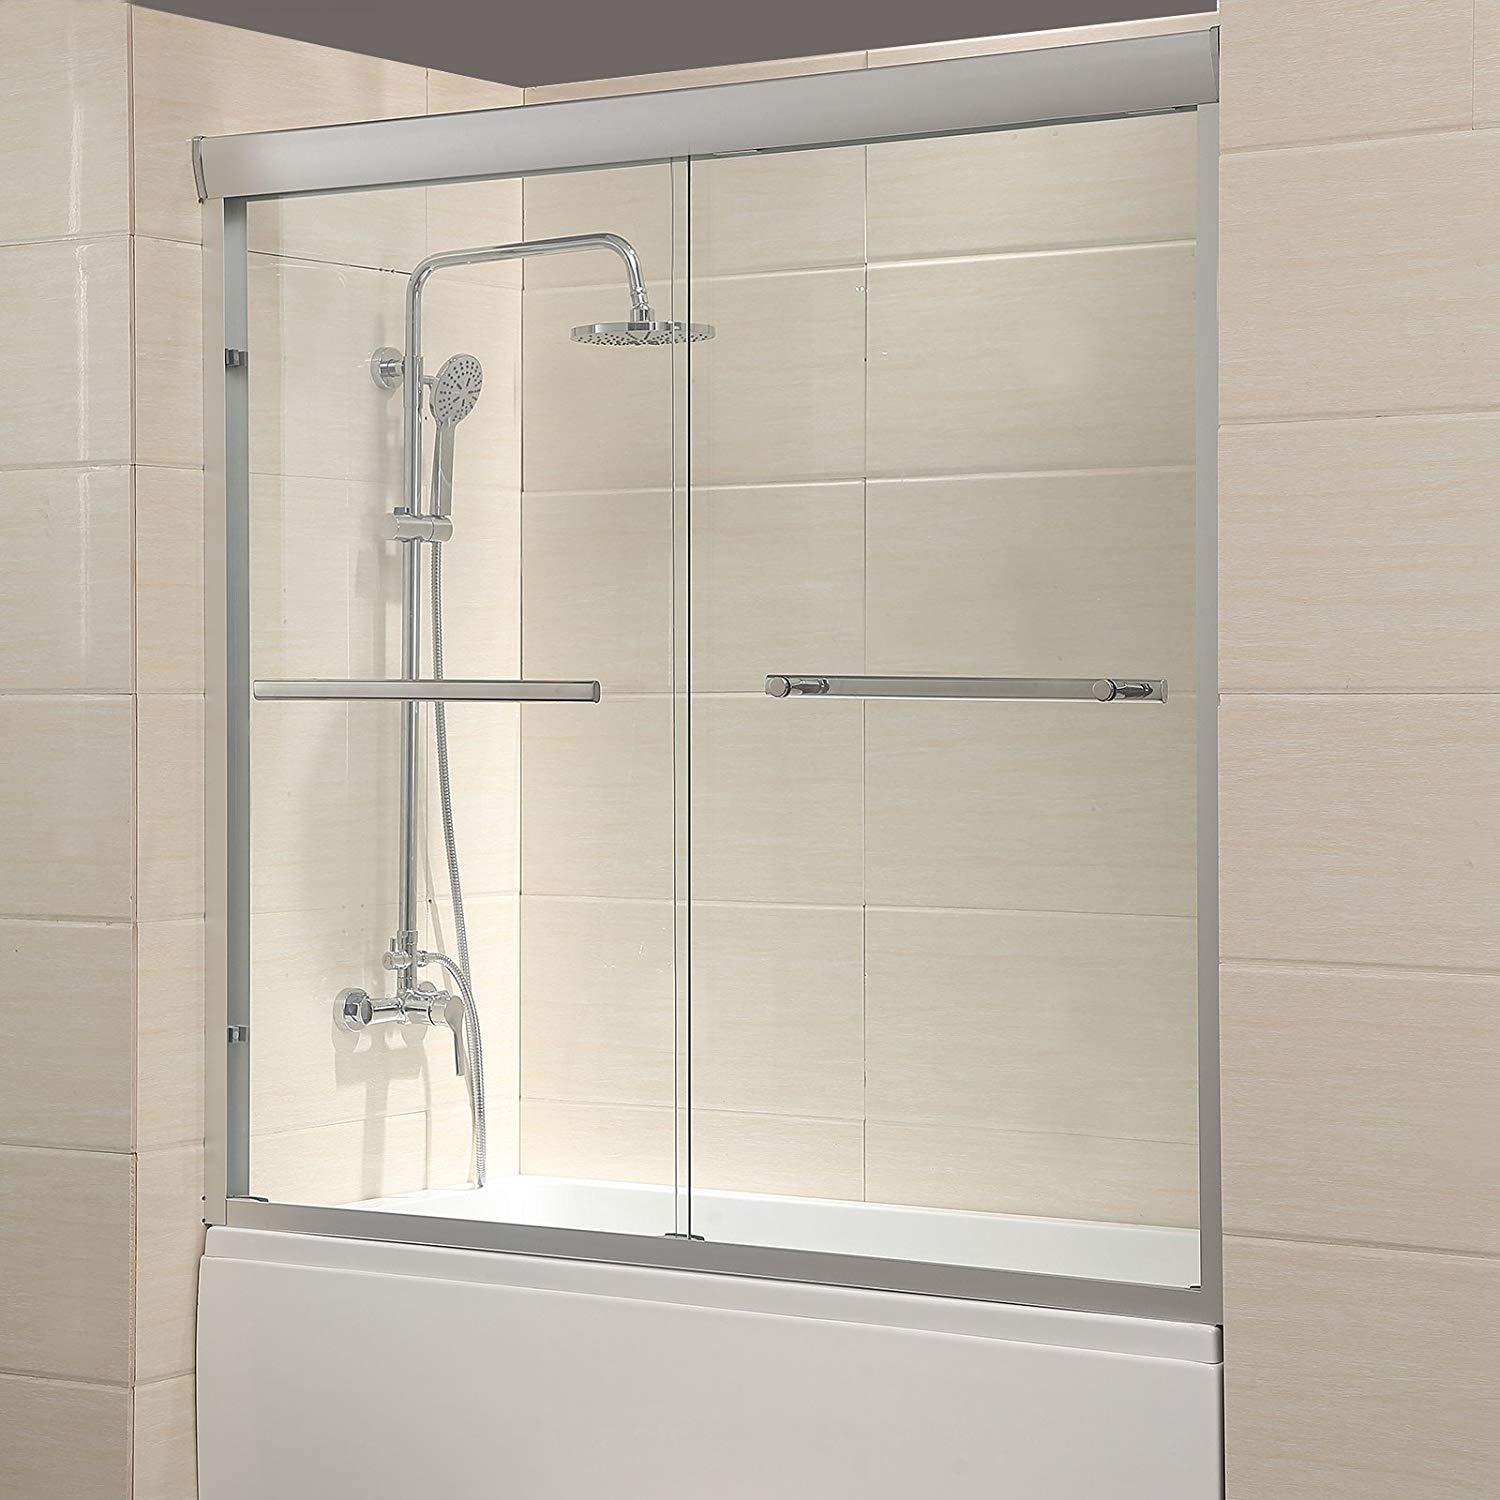 Mecor Framed Bathtub Sliding Glass Shower Door